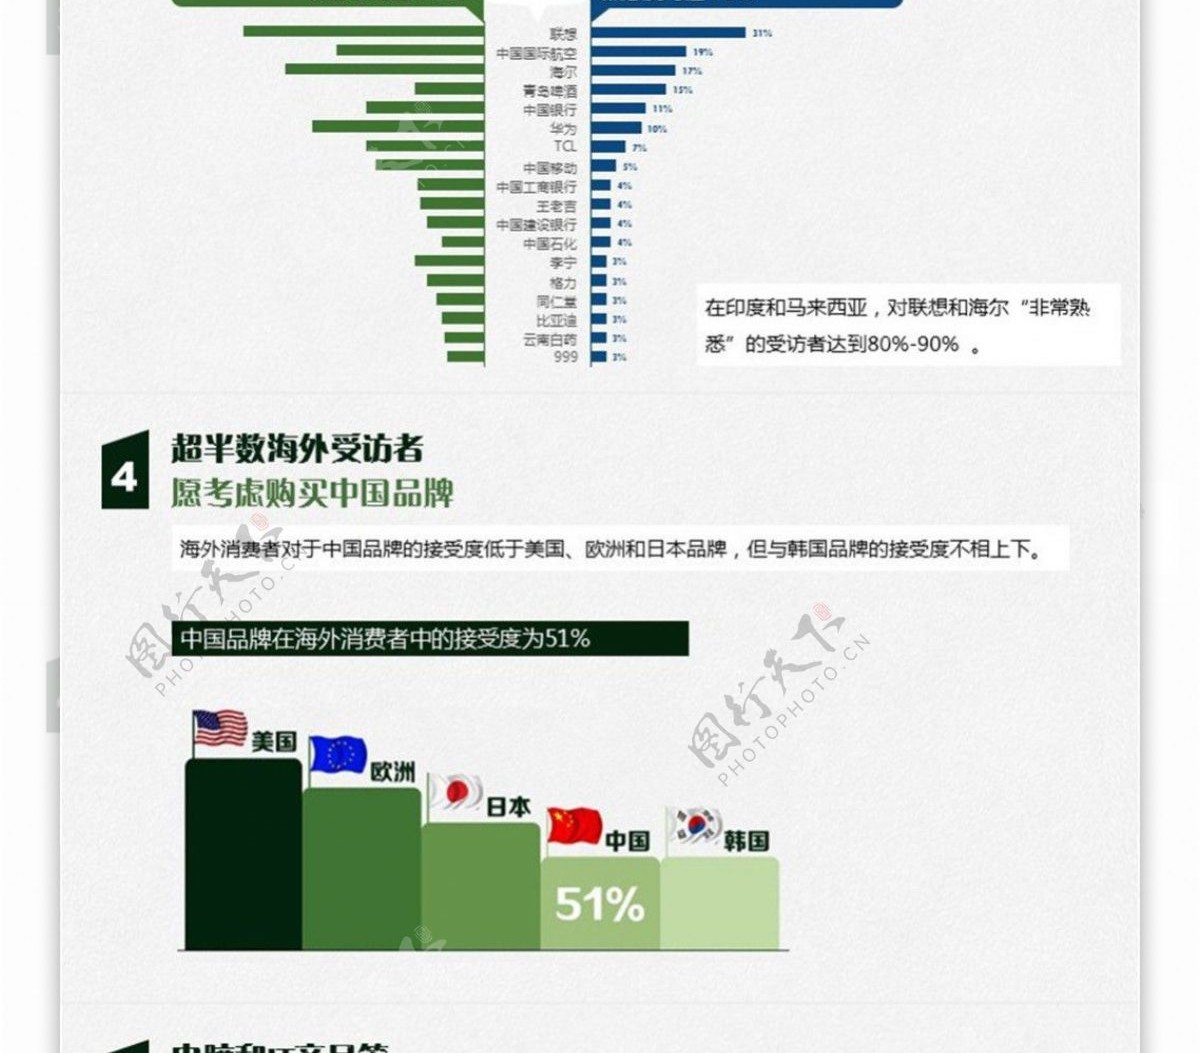 中国品牌在全球的熟知度调查分析报告ppt模板